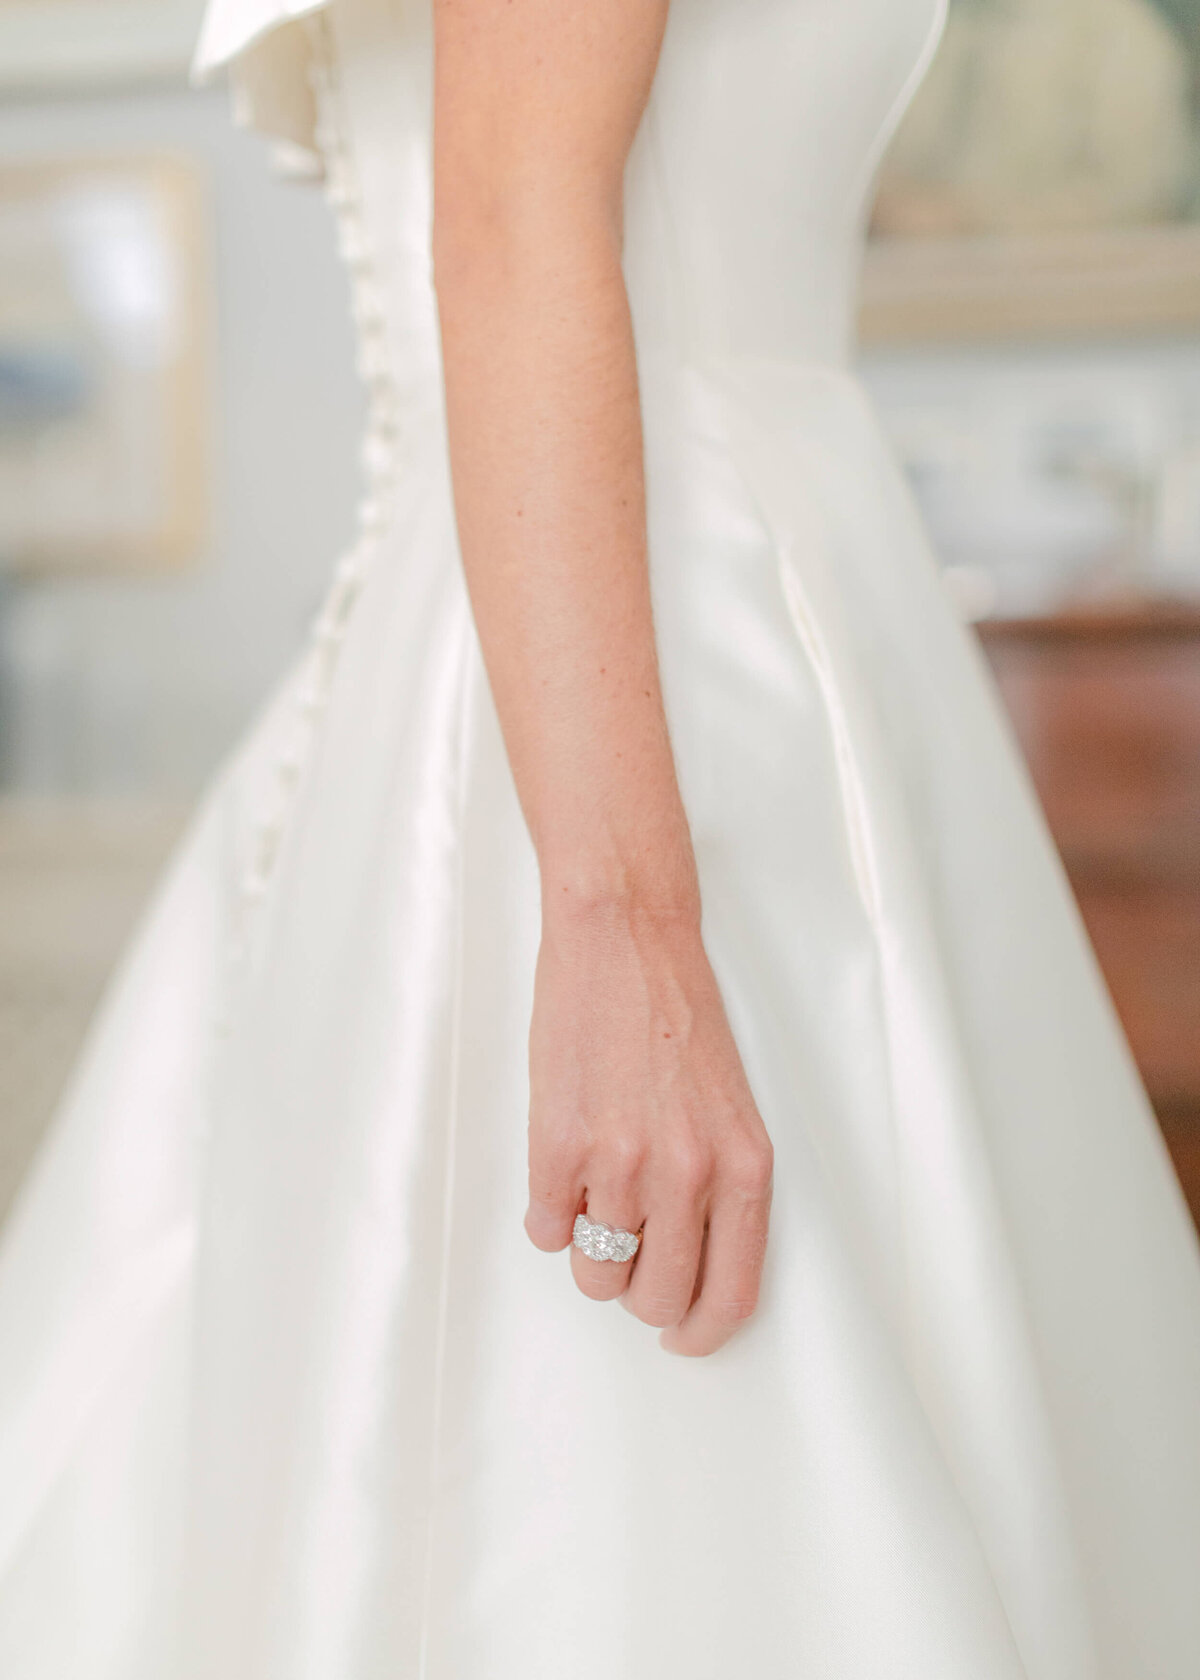 chloe-winstanley-weddings-london-chelsea-engagement-ring